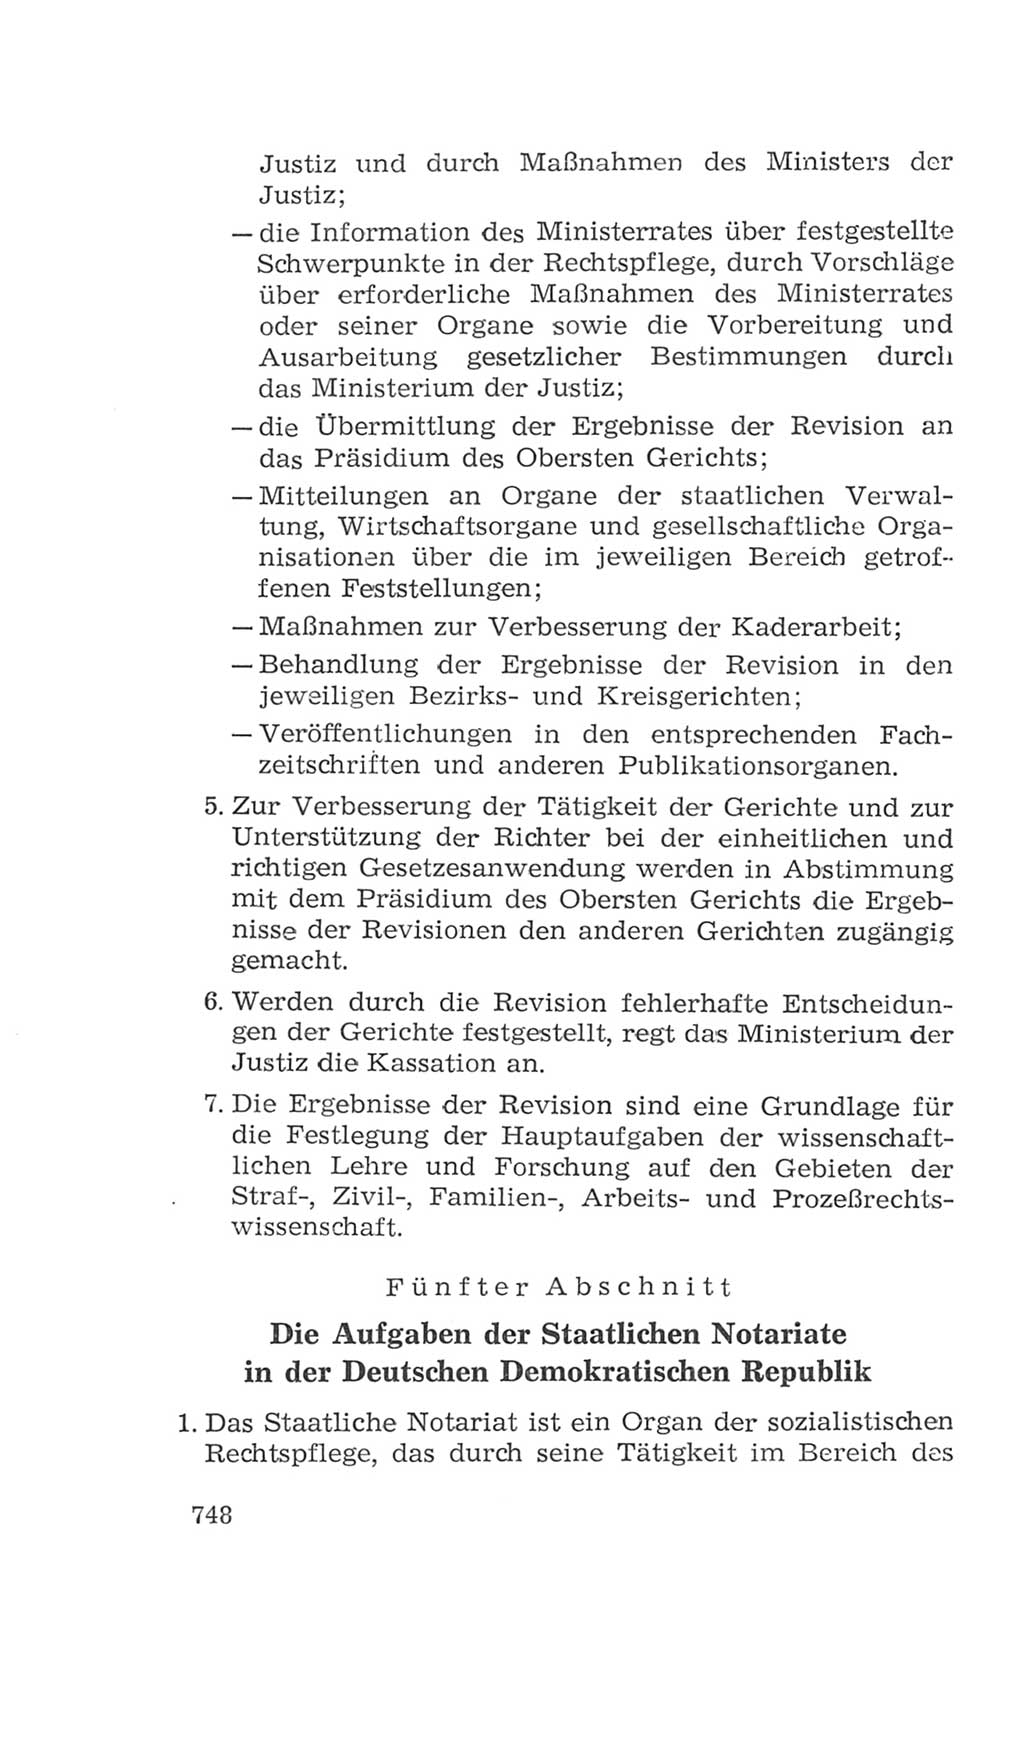 Volkskammer (VK) der Deutschen Demokratischen Republik (DDR), 4. Wahlperiode 1963-1967, Seite 748 (VK. DDR 4. WP. 1963-1967, S. 748)